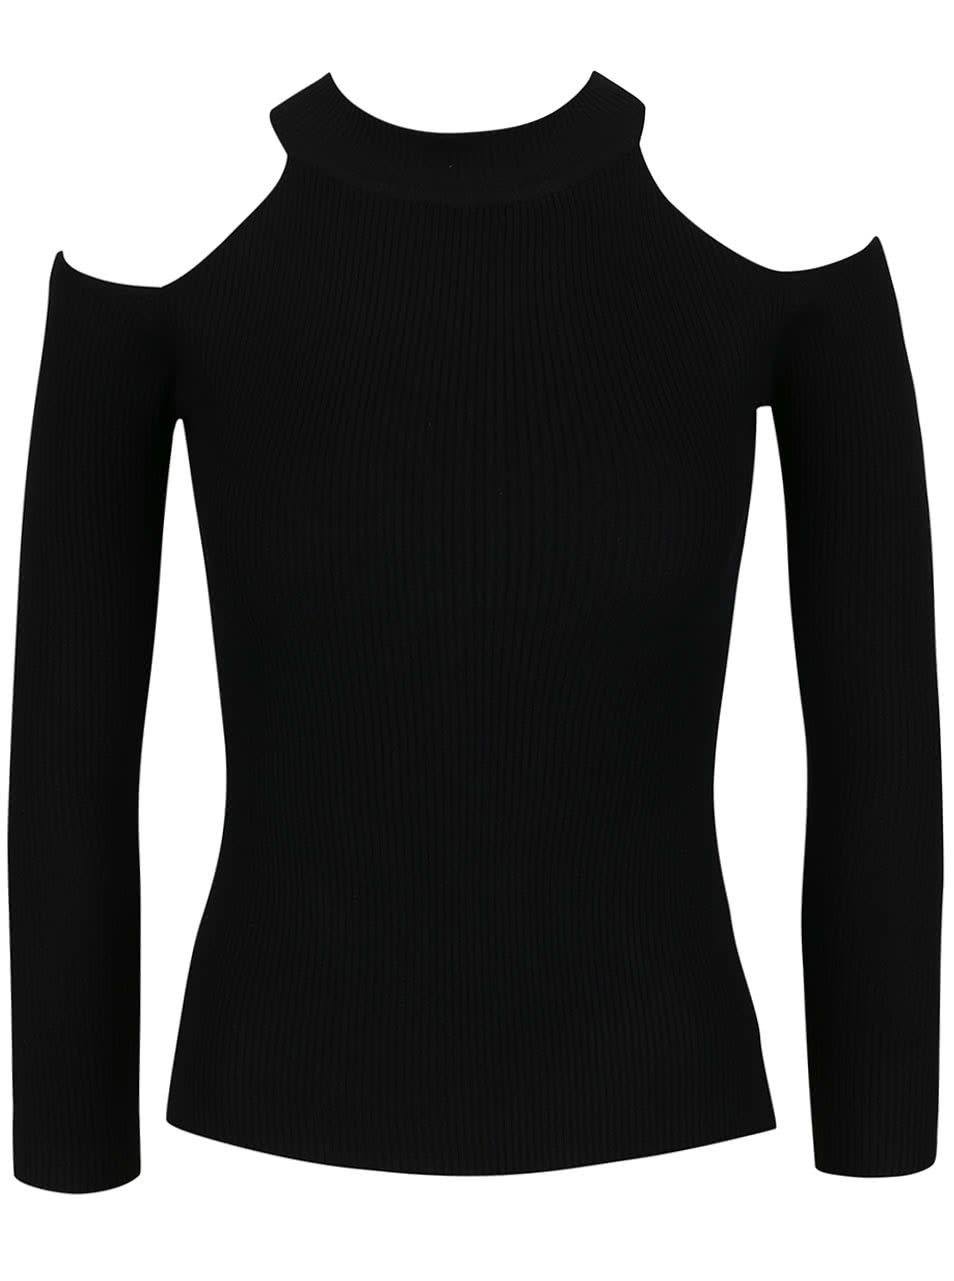 Černý svetr s odhalenými rameny Haily´s Peggy